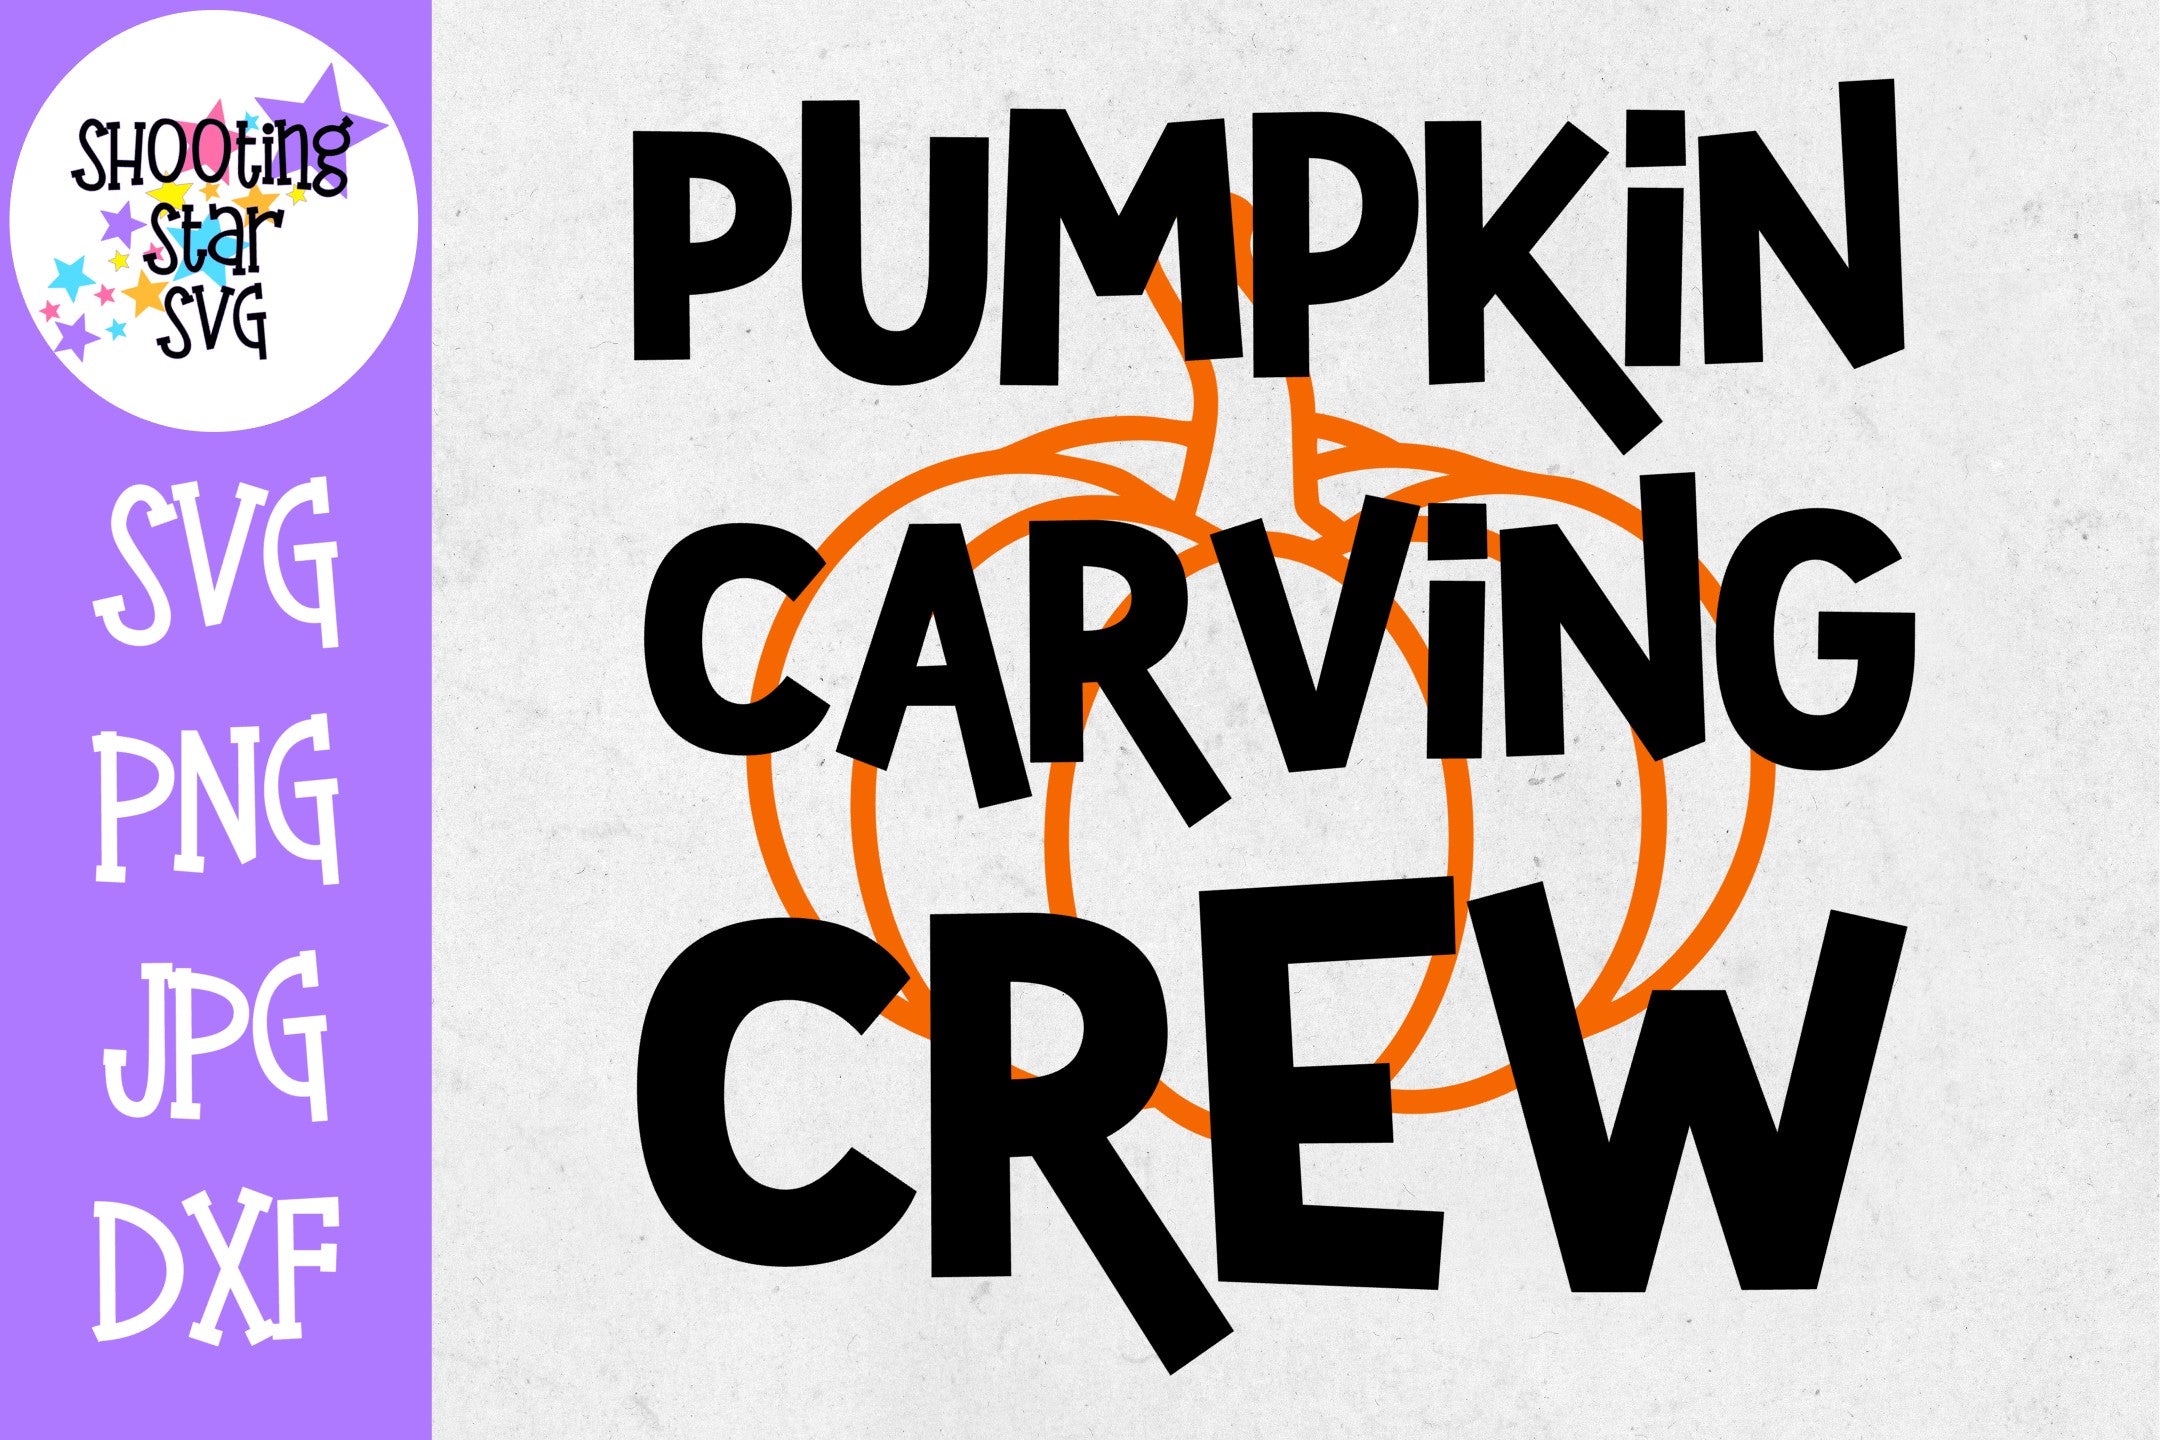 Pumpkin Carving Crew SVG - Pumpkin SVG - Halloween SVG